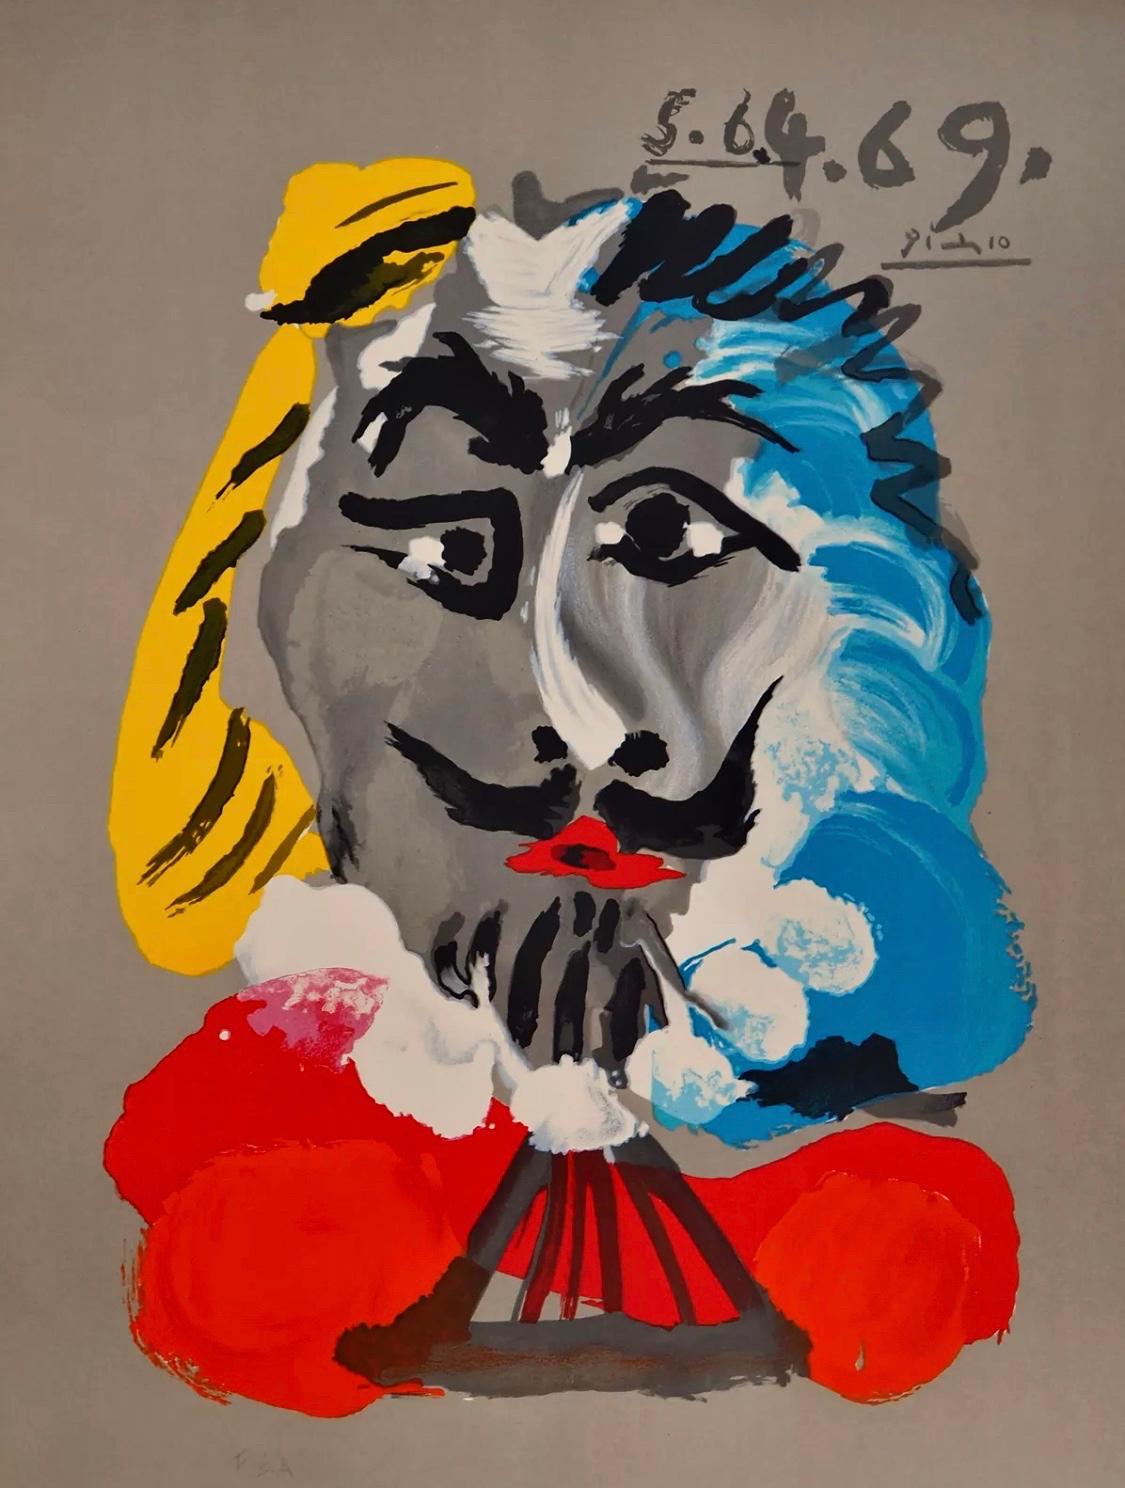 (after) Pablo Picasso Portrait Print - Pablo Picasso "Portraits Imaginaires: Mousquetaire" 1969, Lithograph